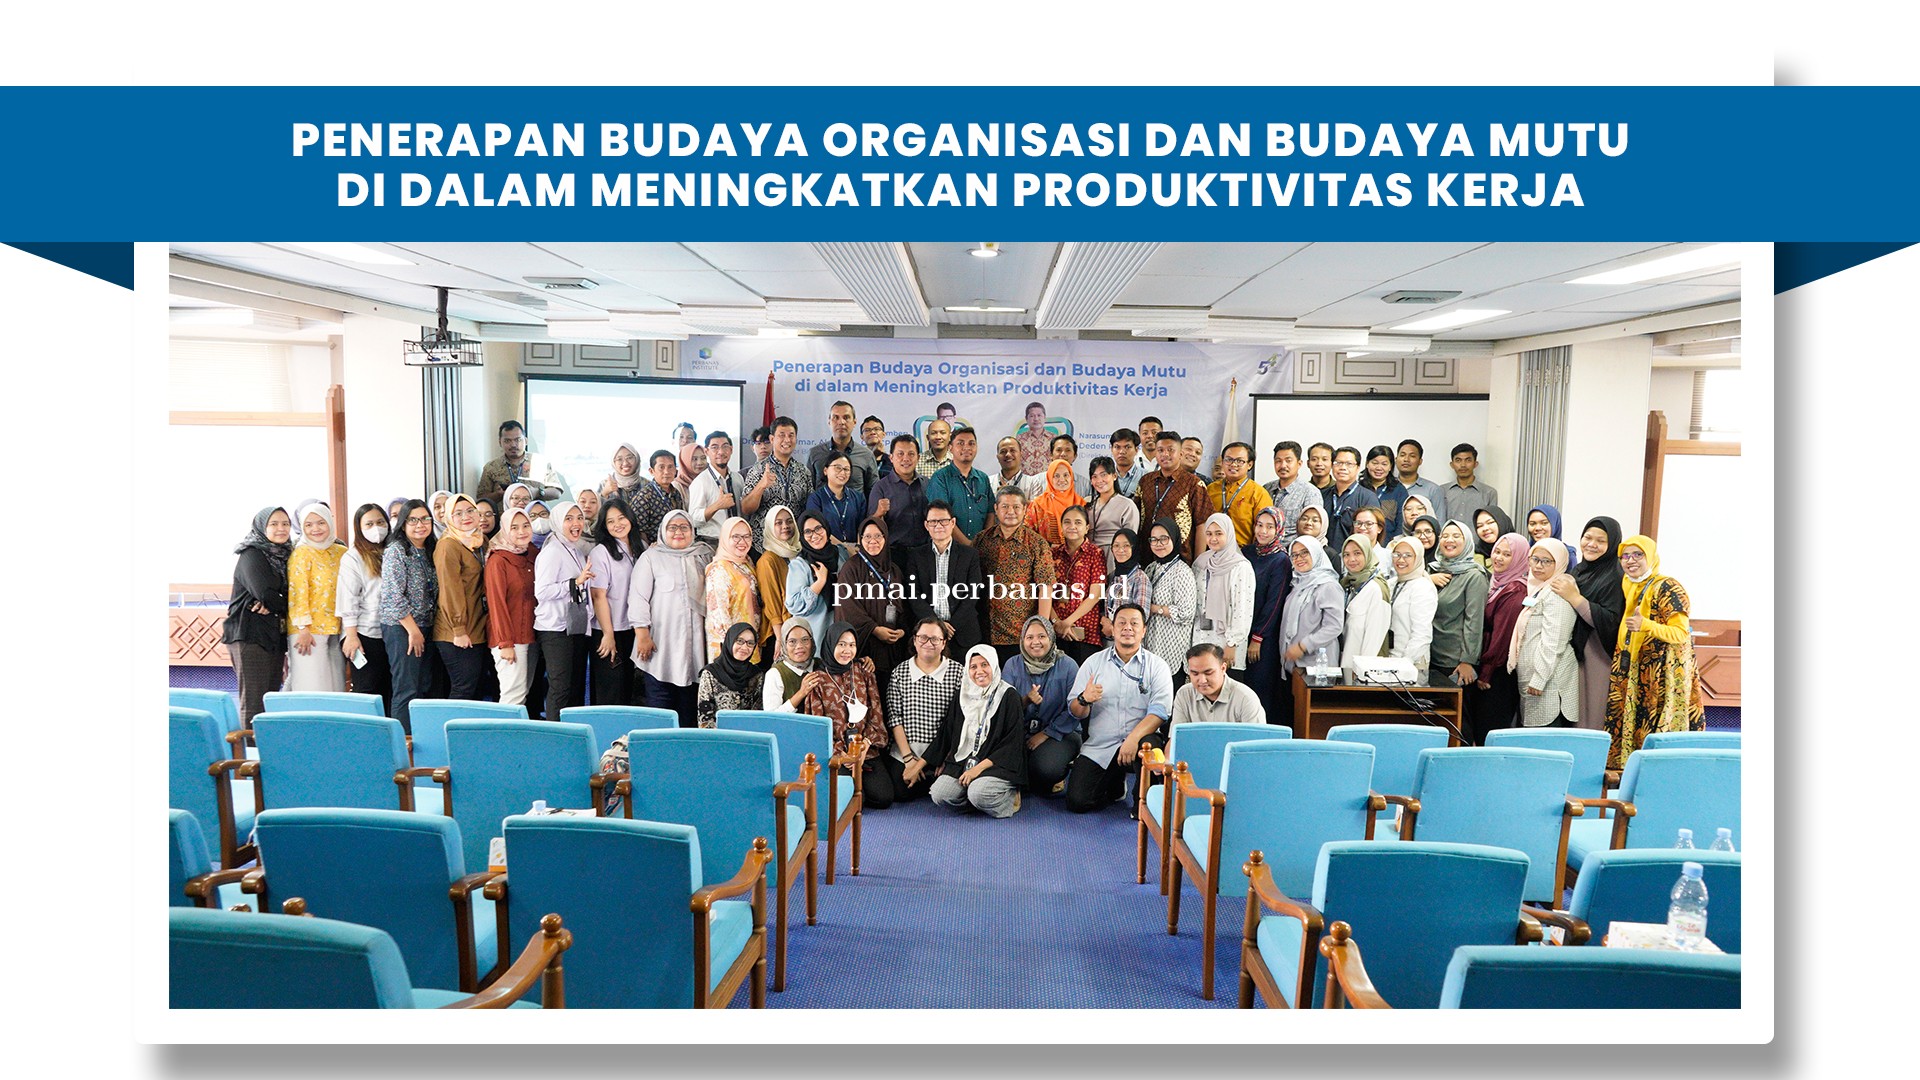 Seminar Penerapan Budaya Organisasi dan Budaya Mutu di dalam Meningkatkan Produktivitas Kerja